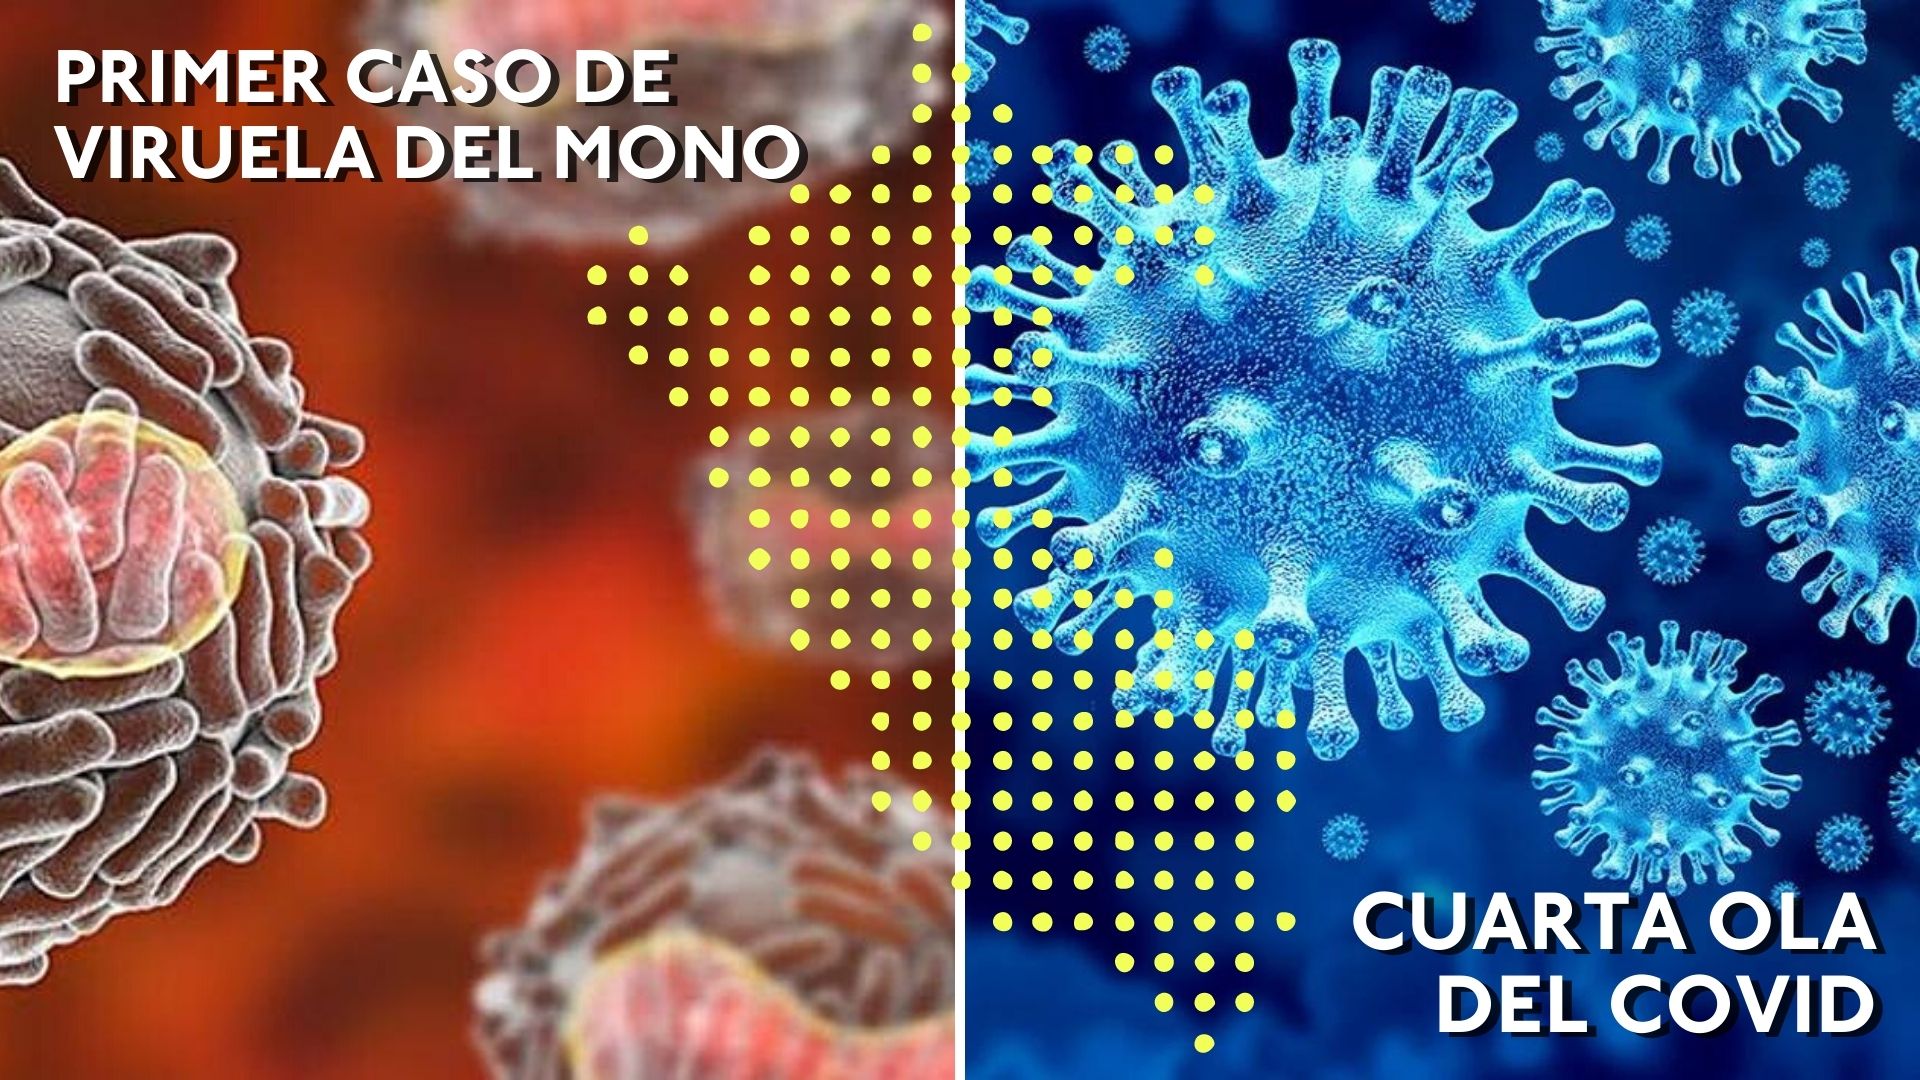 Perú registra primer caso de viruela del mono y entra a cuarta ola del COVID-19